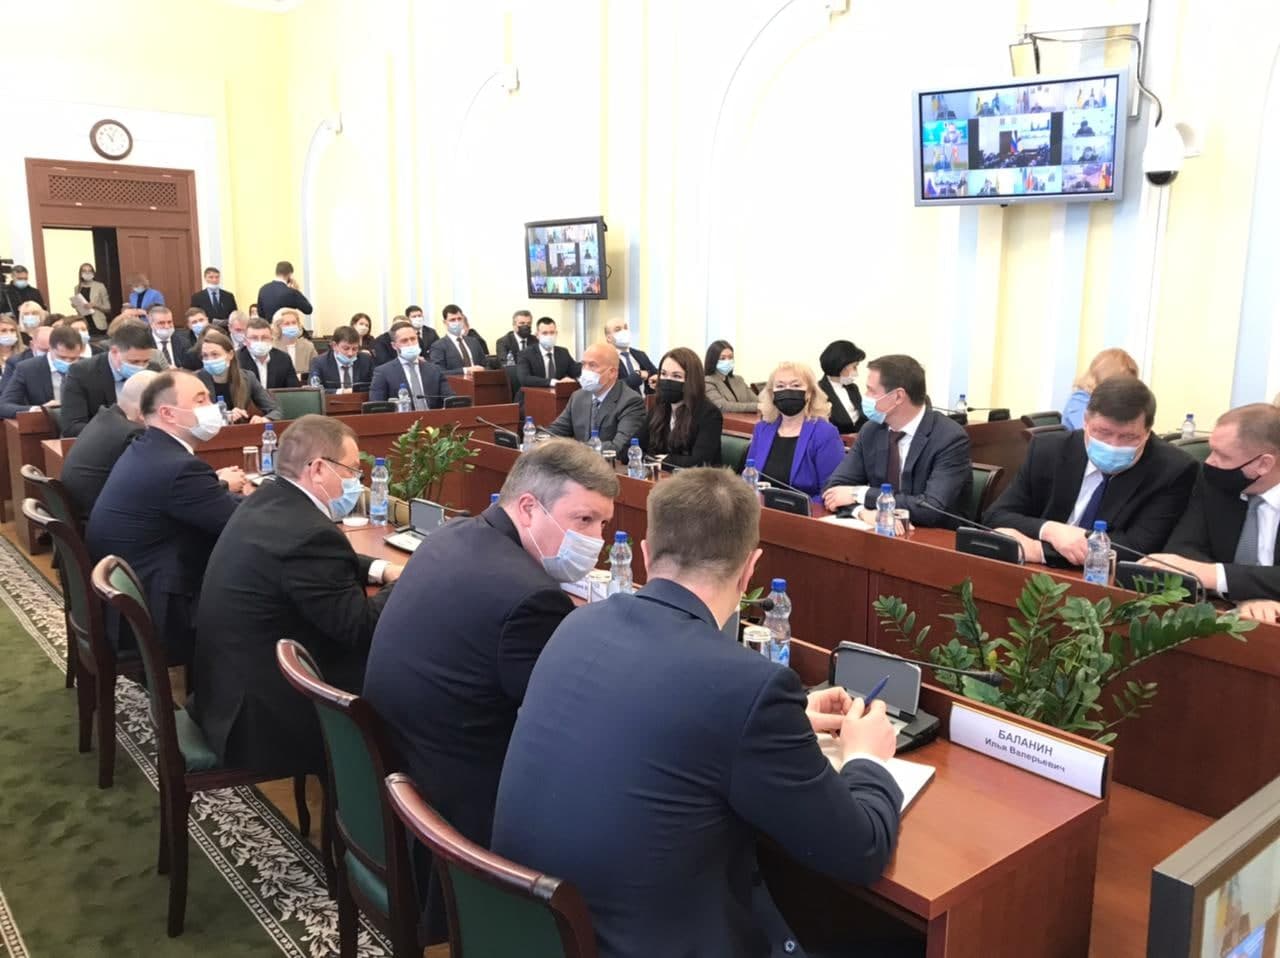 Сегодня врио губернатора озвучит новую структуру и состав Правительства Ярославской области